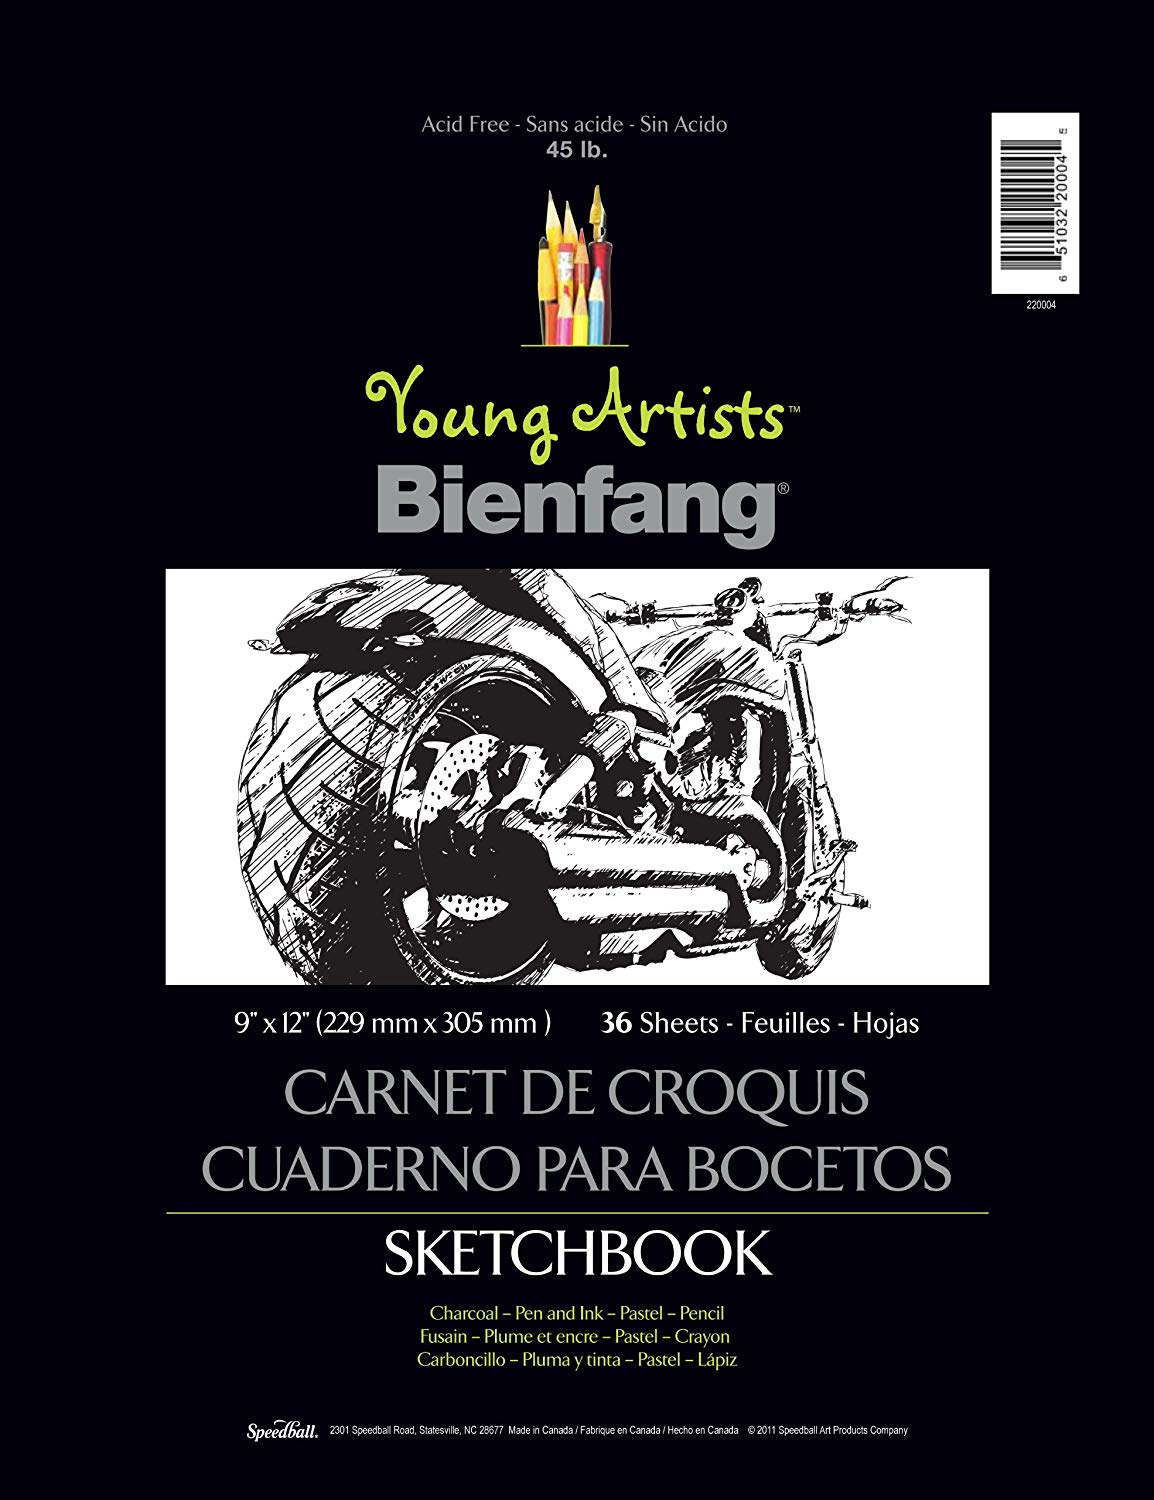 Bienfang YA Sketchbook 9x12 - Wyndham Art Supplies